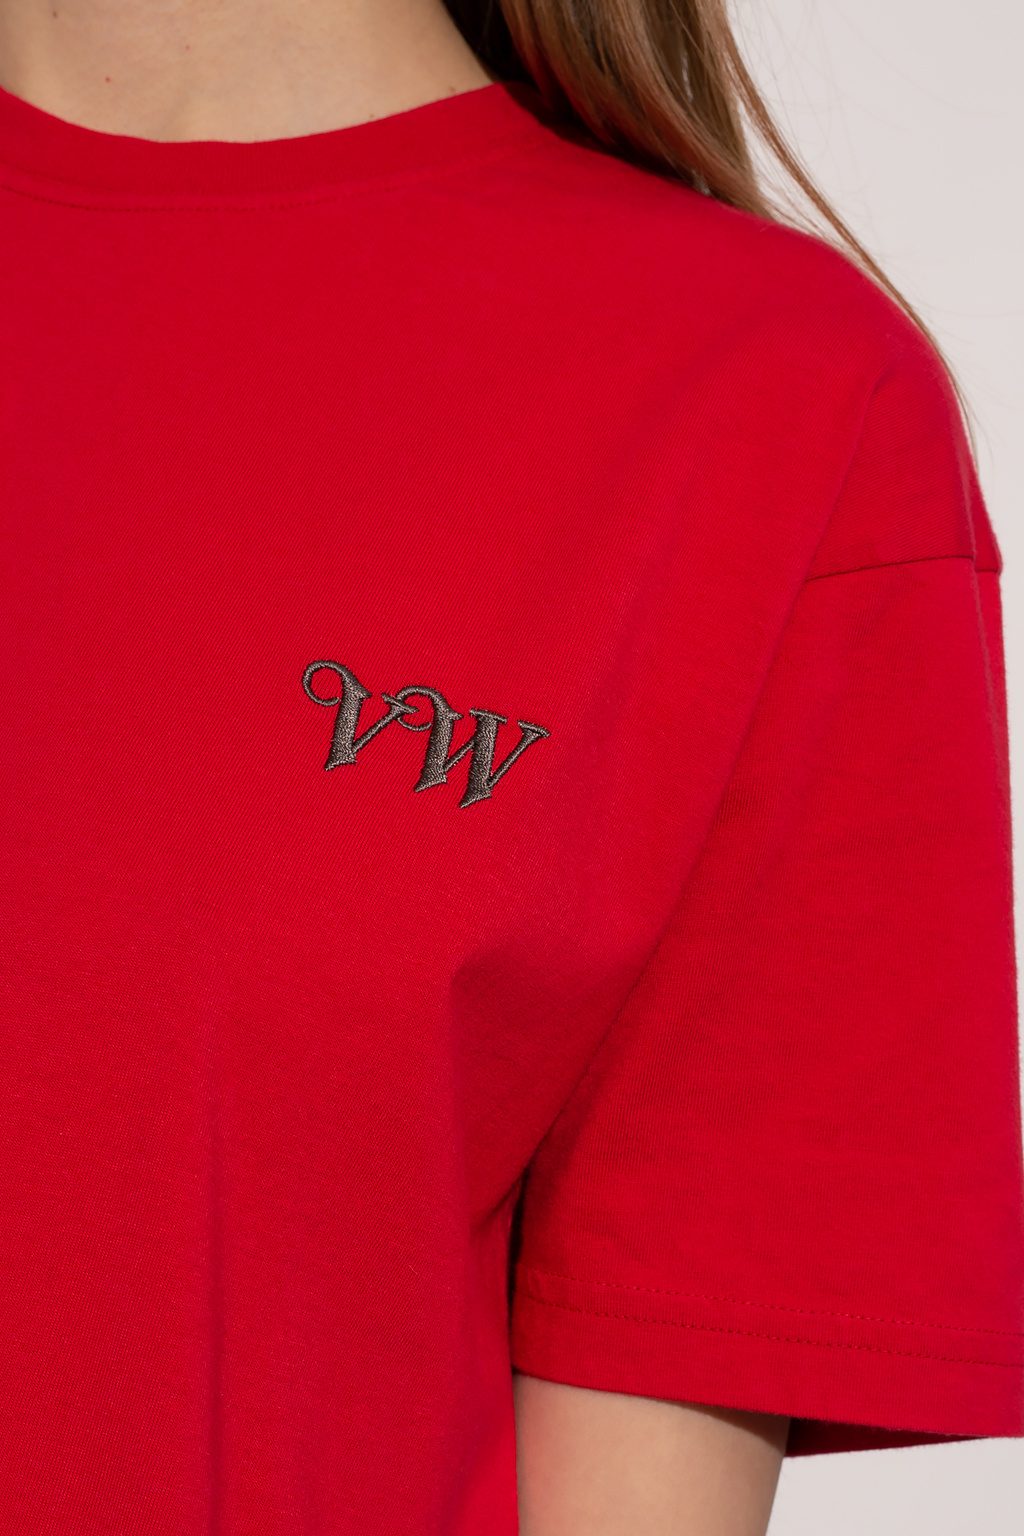 Vivienne Westwood Source Lab Manchester City FC T Shirt Mens